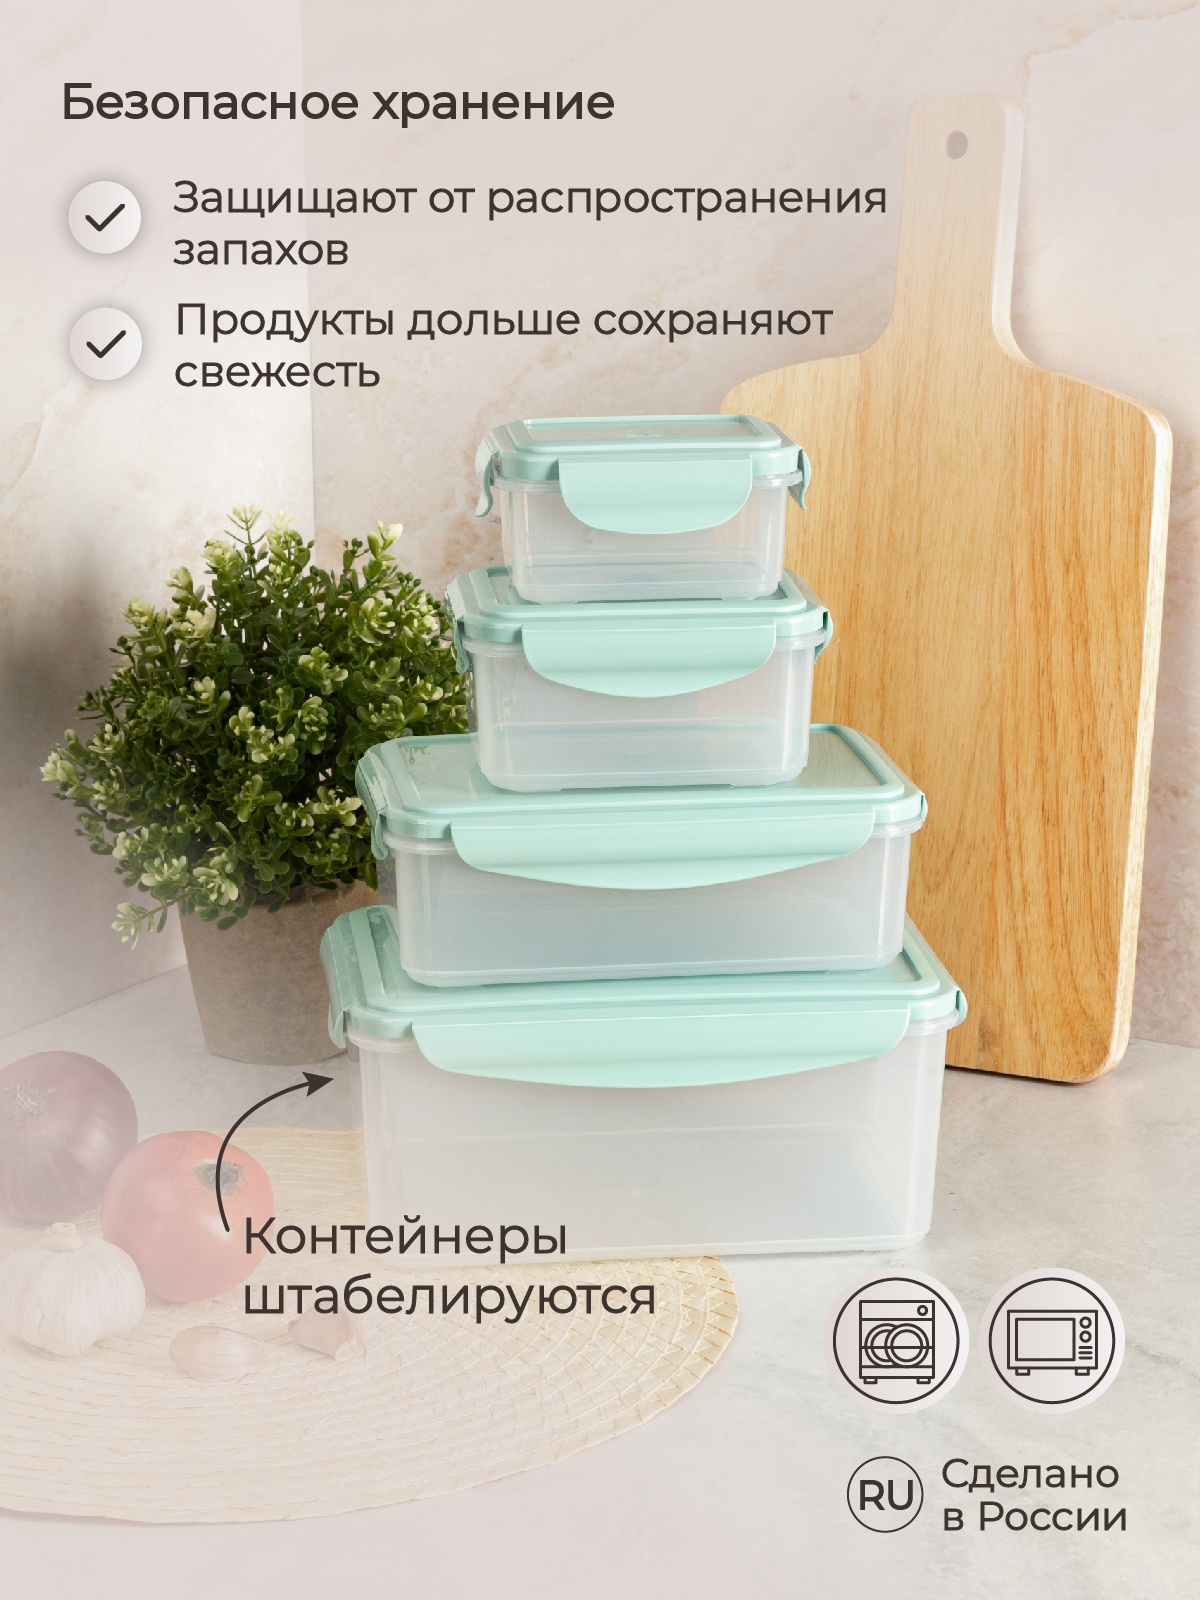 Комплект контейнеров Phibo для холодильника и микроволновой печи Smart Lock 4 шт 2.5л+1.1л+0.5л+0.25л - фото 6